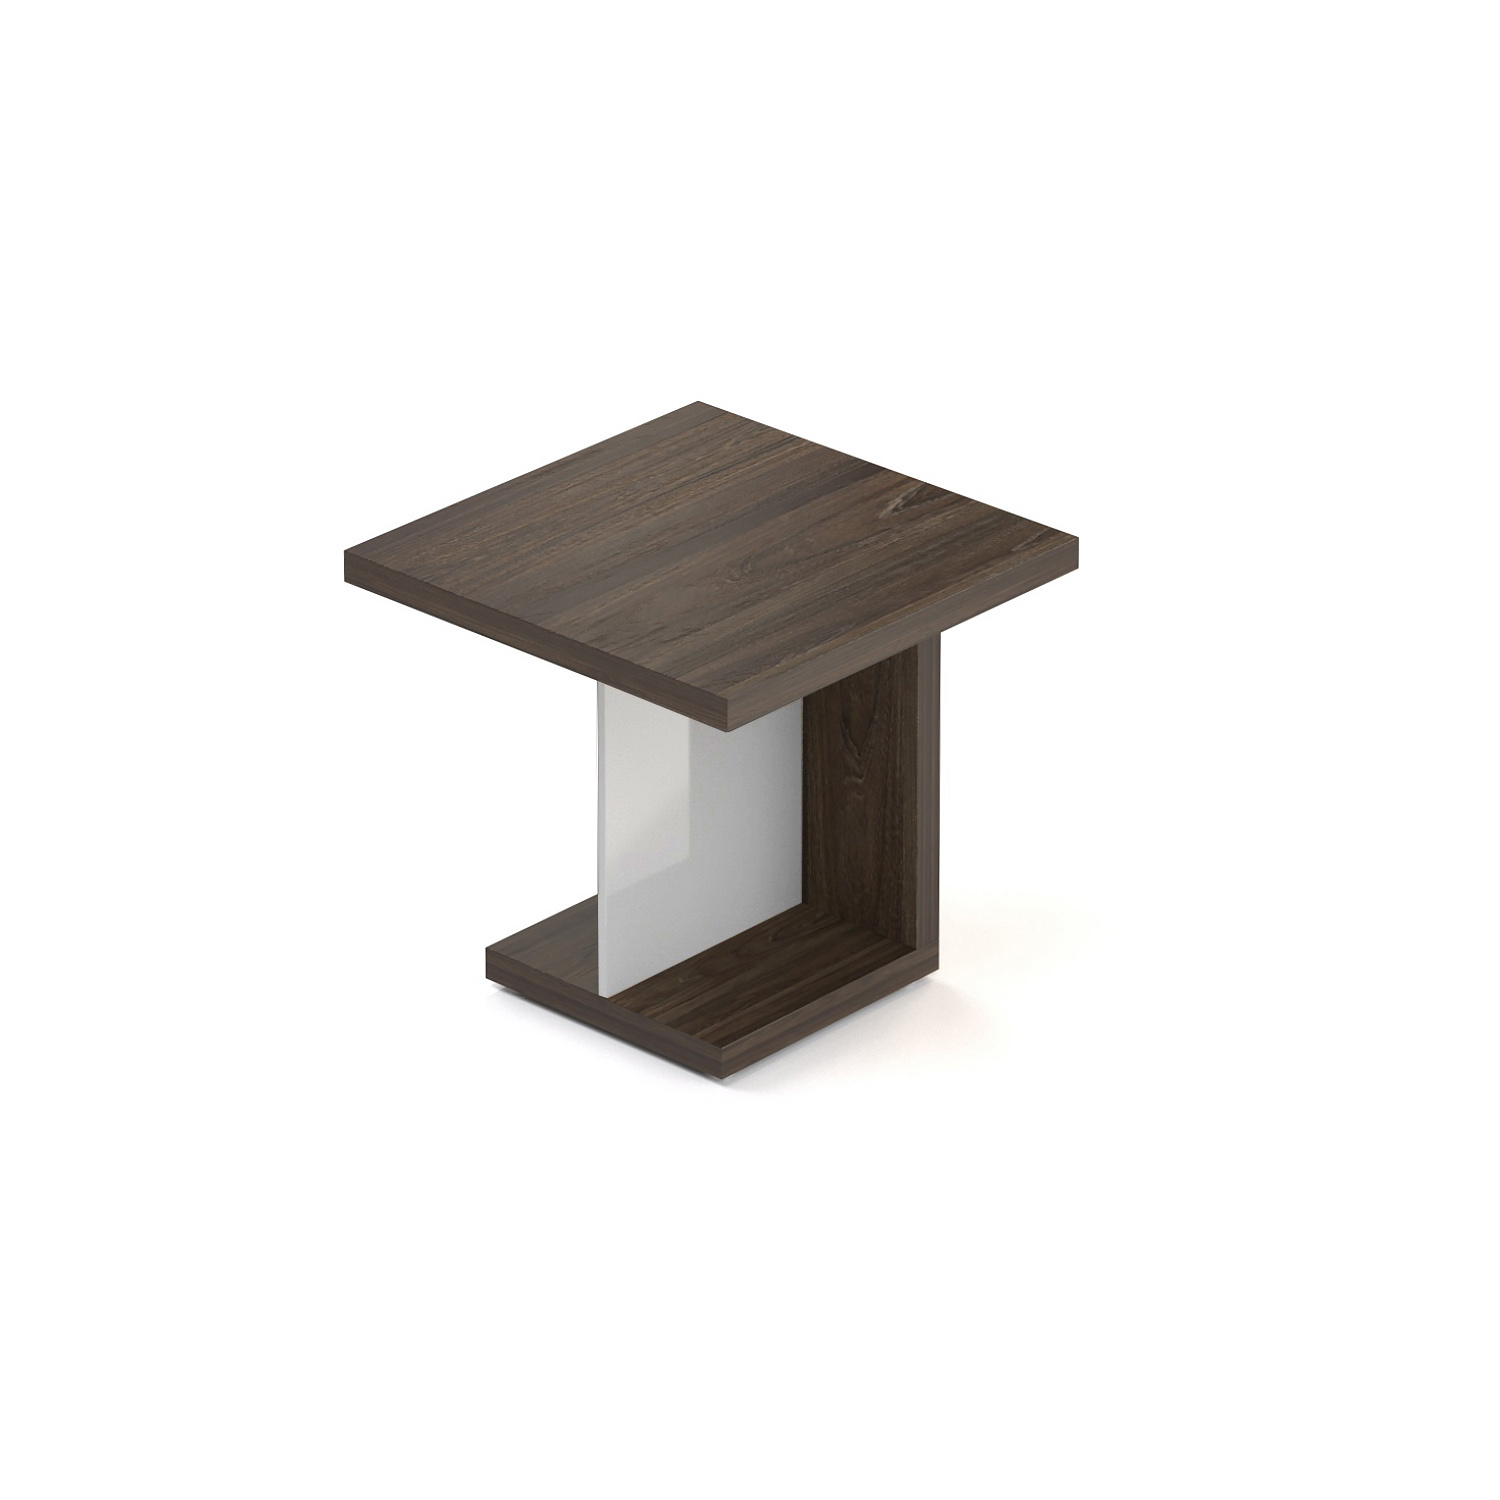 Manažerský konferenční stolek SOLID, čtvercový 80x80cm (Manažerský konferenční stolek SOLID, čtvercový 80x80cm, výška 75cm)